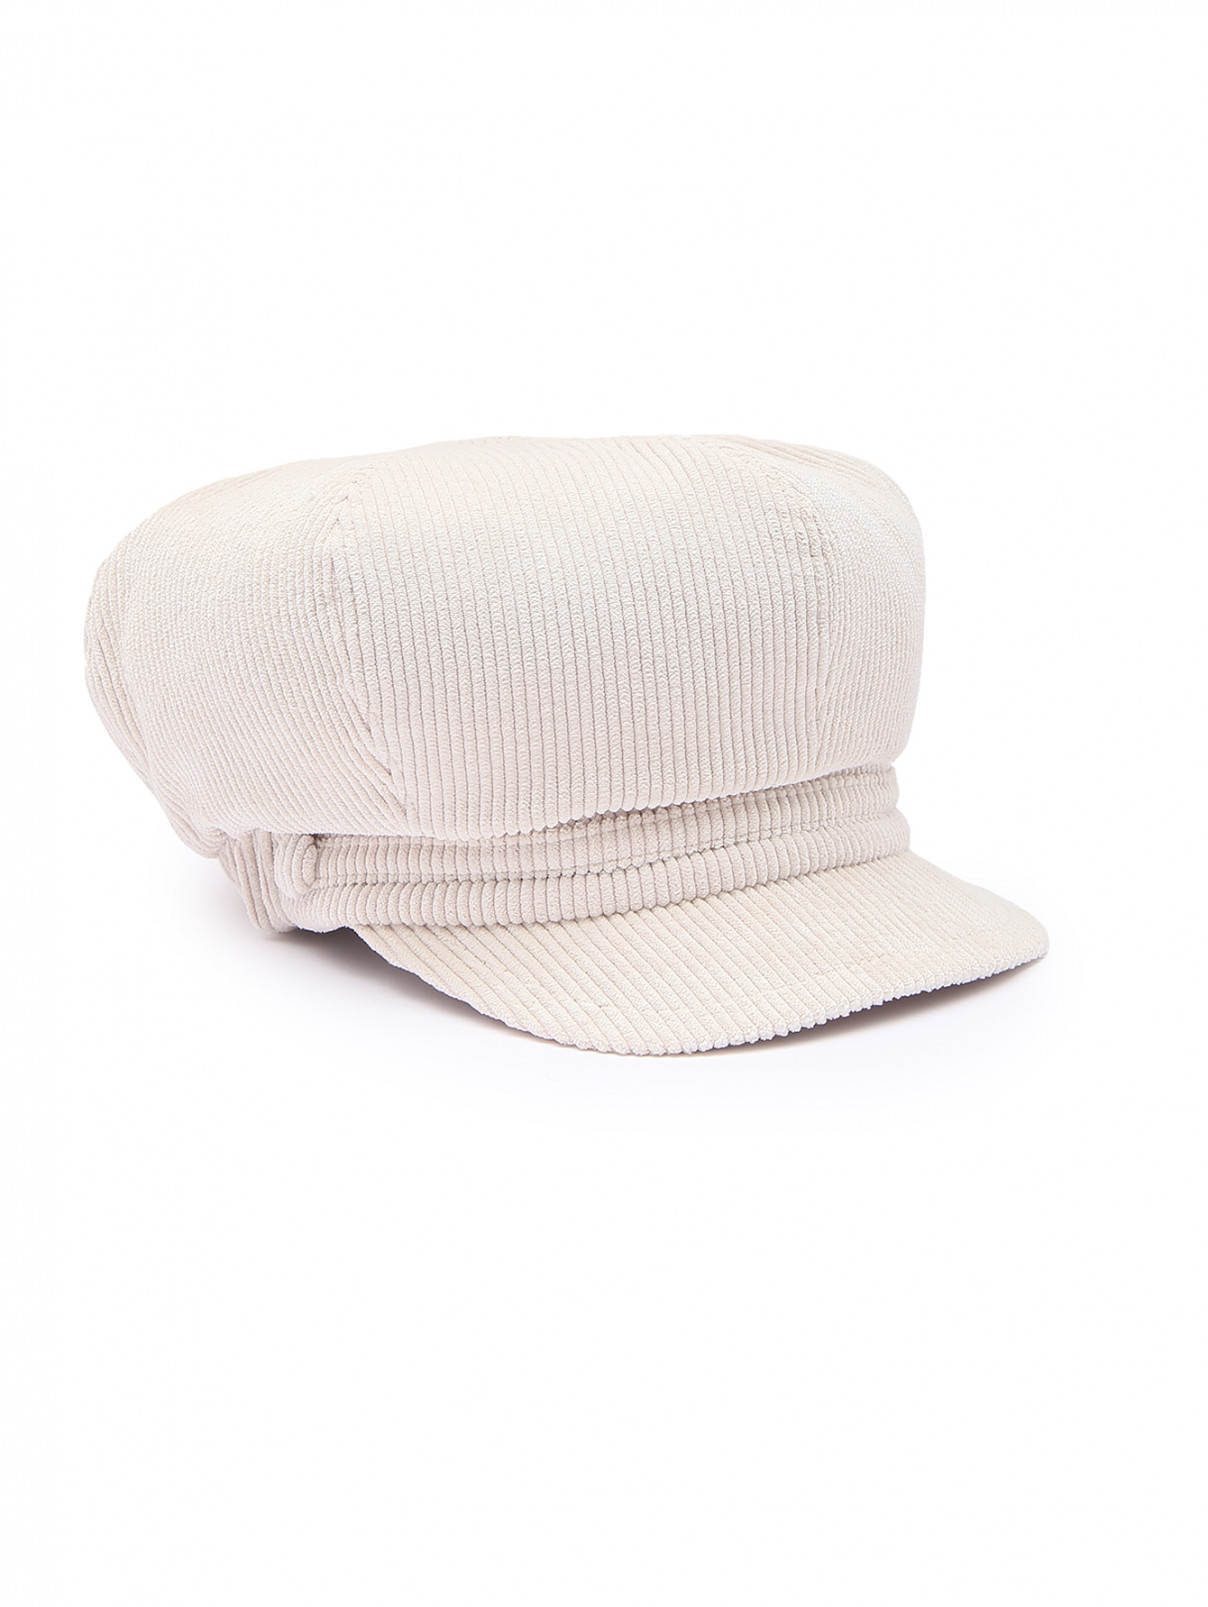 Вельветовая кепка из хлопка Luisa Spagnoli  –  Общий вид  – Цвет:  Бежевый